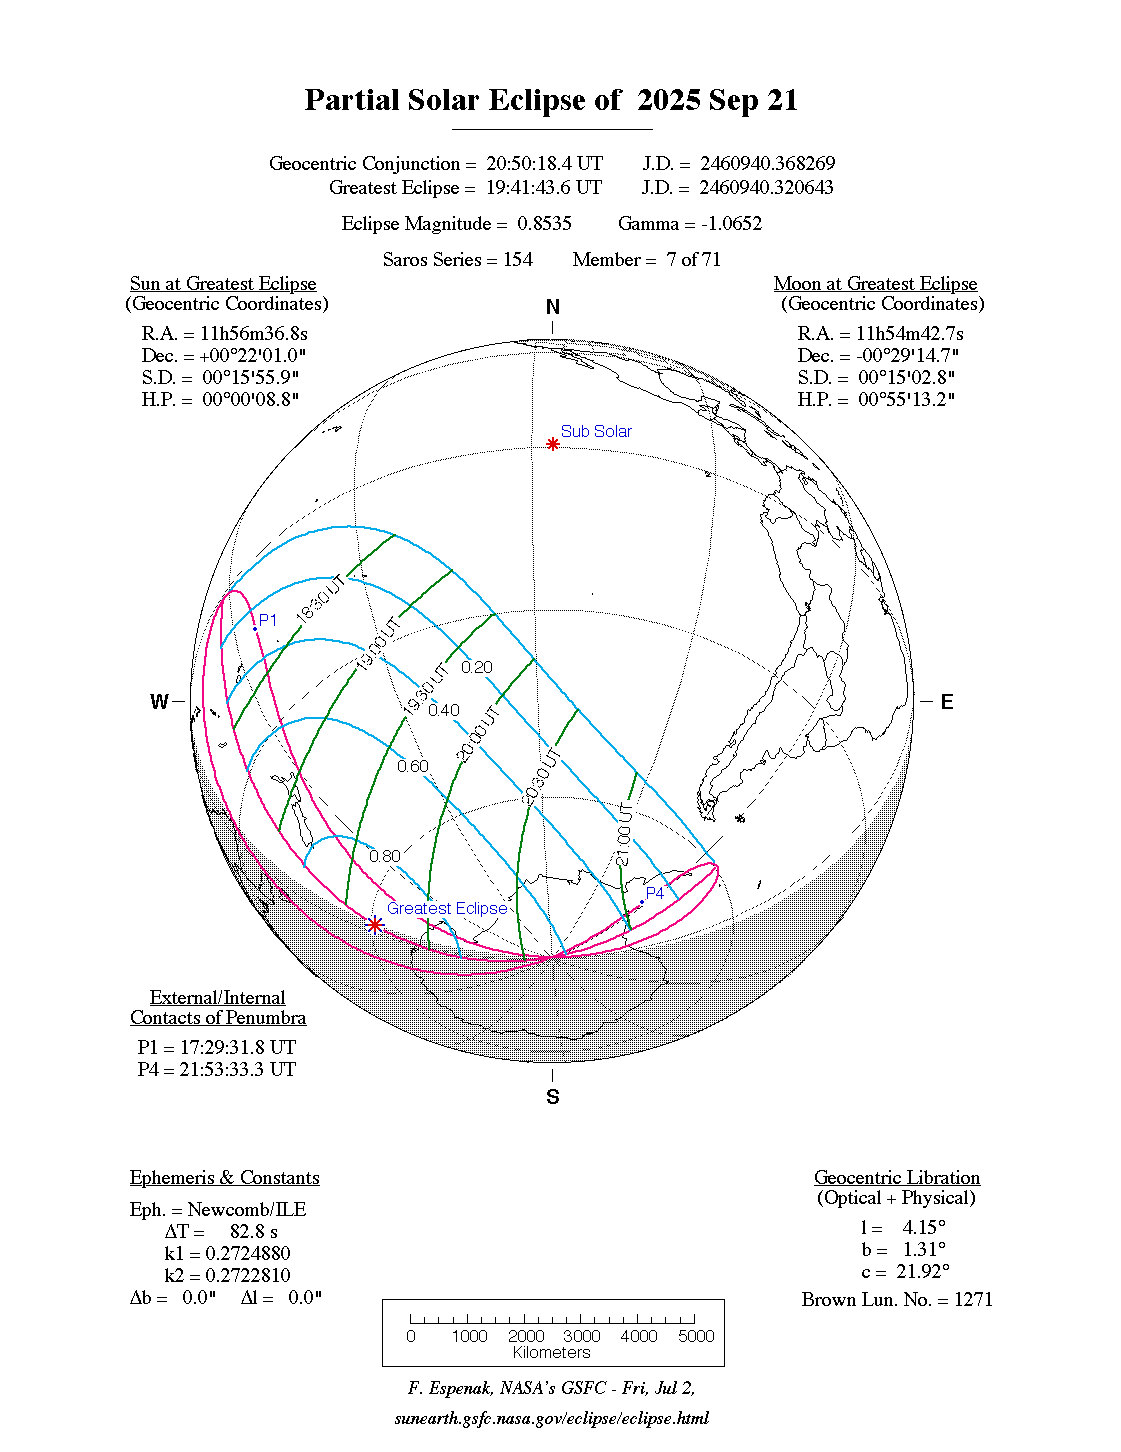 Verlauf der Partiellen Sonnenfinsternis am 21.09.2025